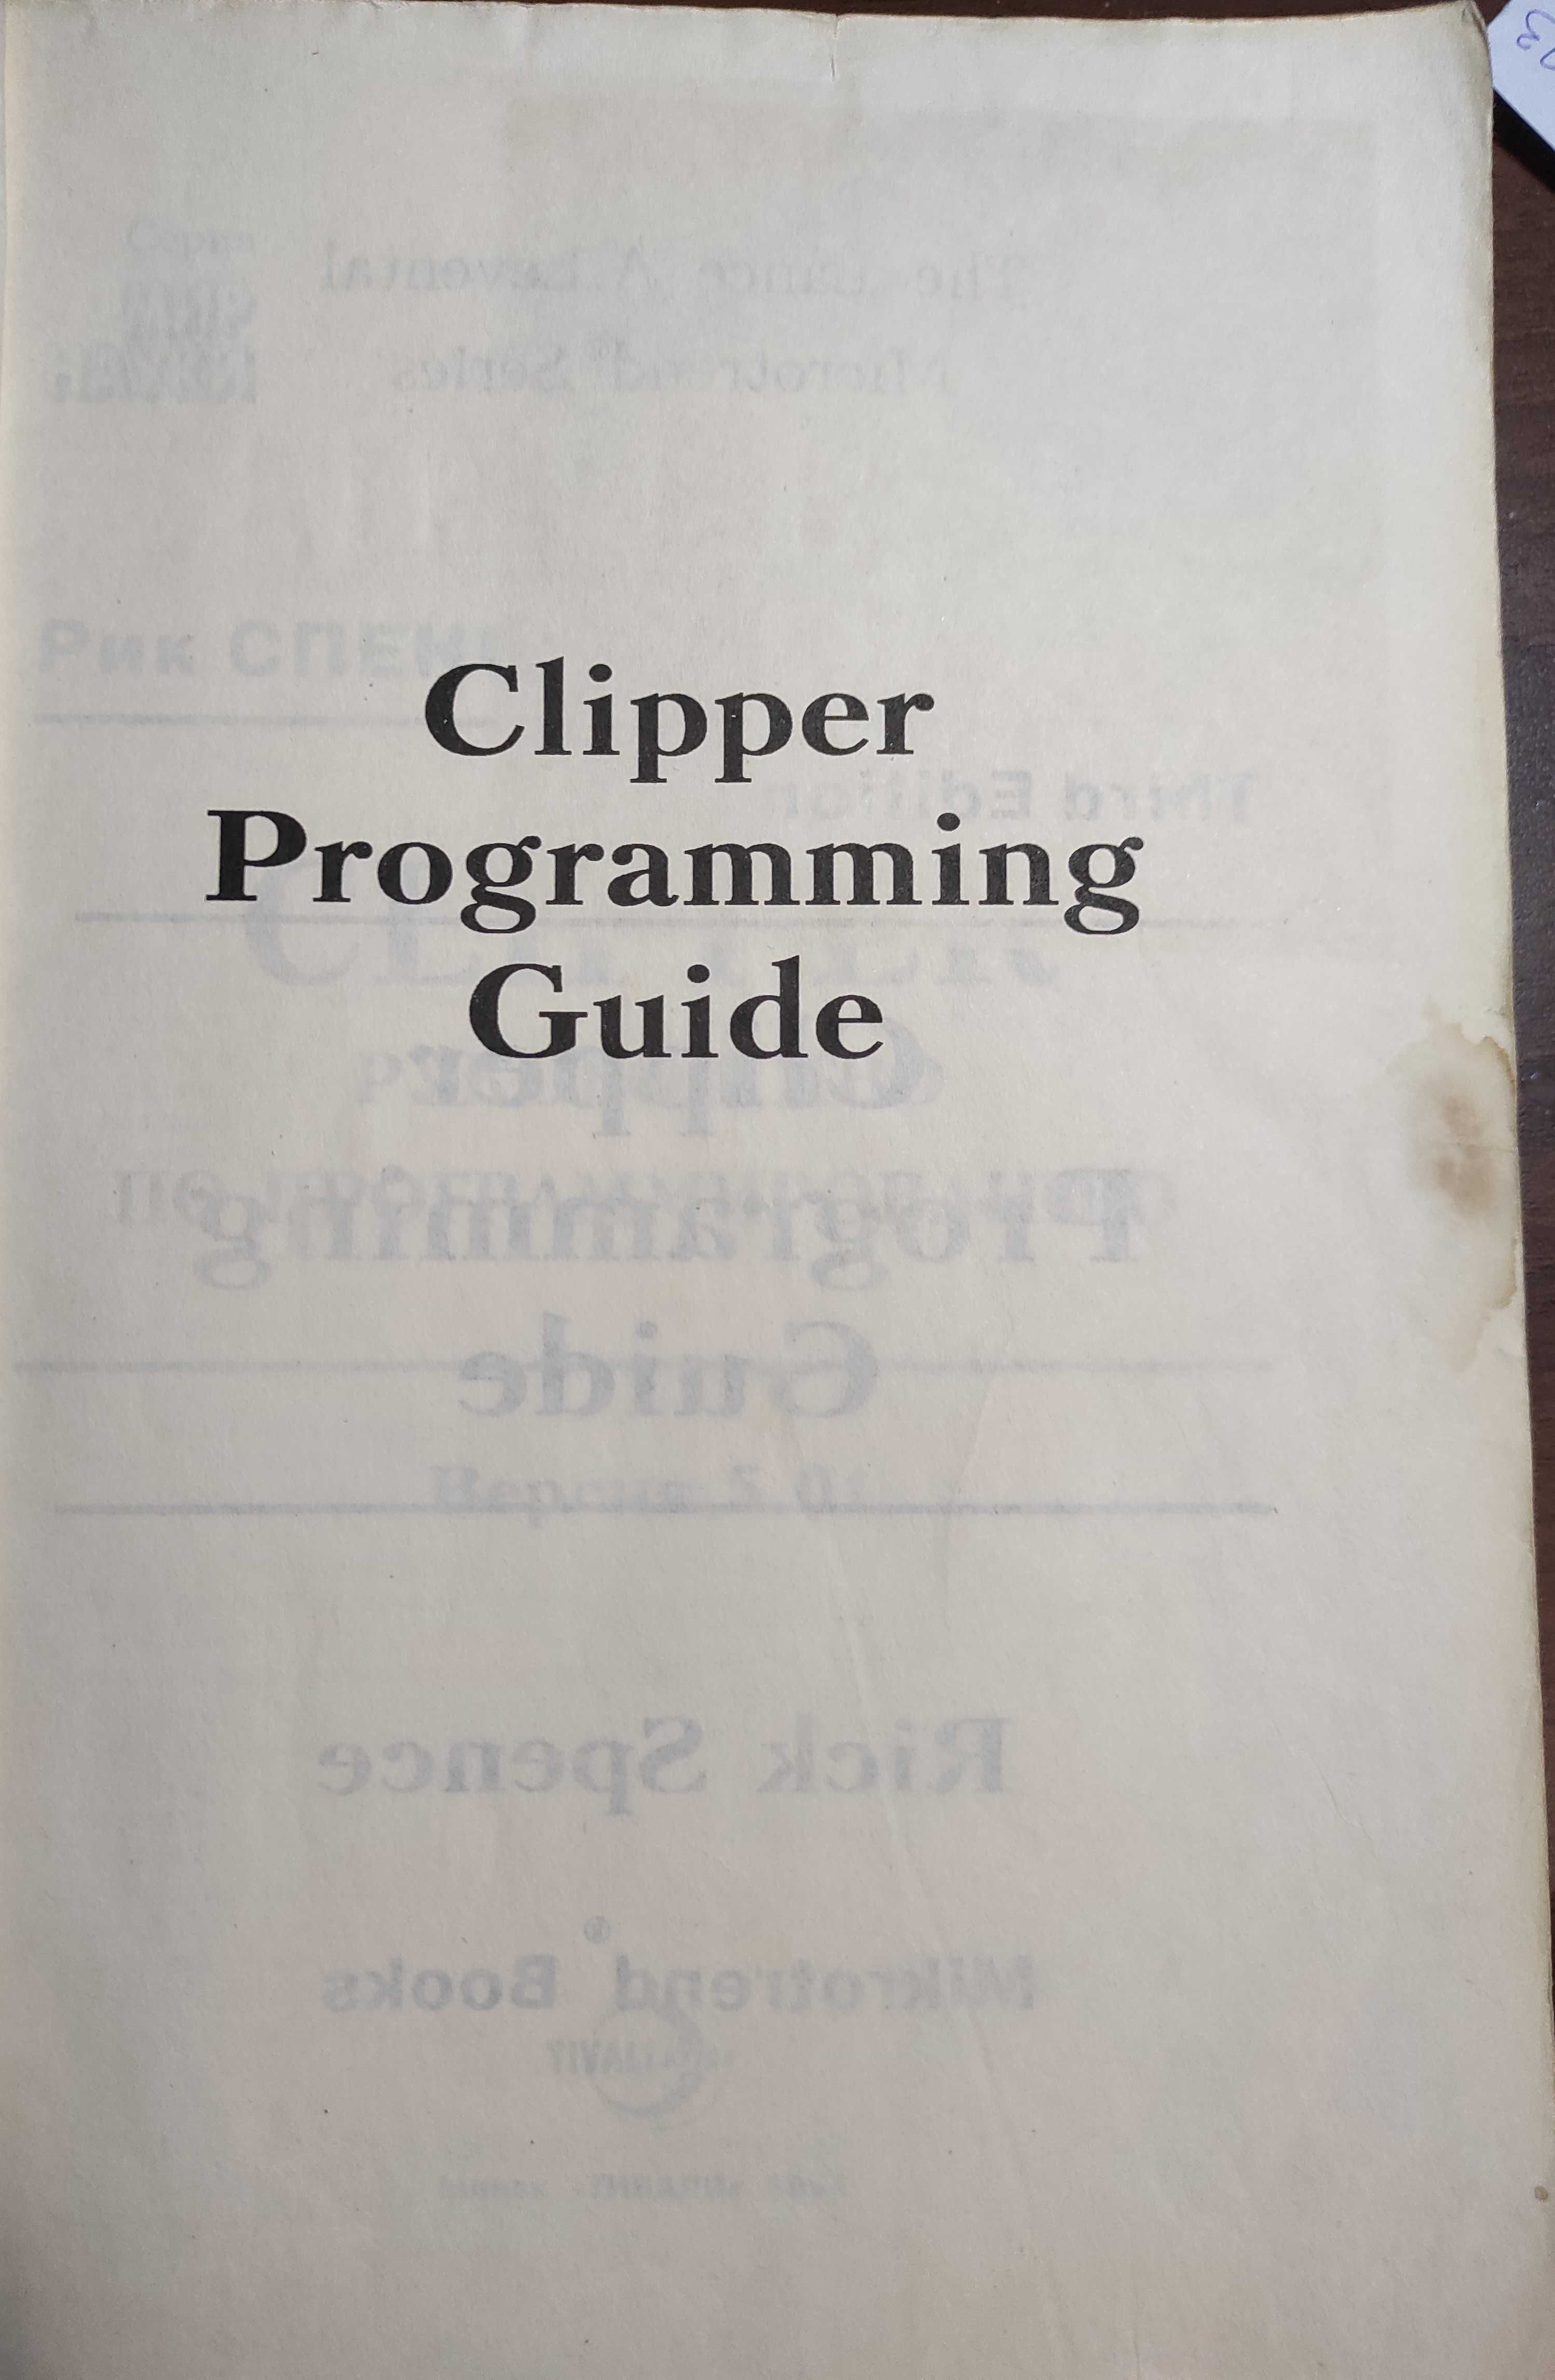 Рик Спенс. Руководство по программированию на Clipper 5.01. 3 издание.